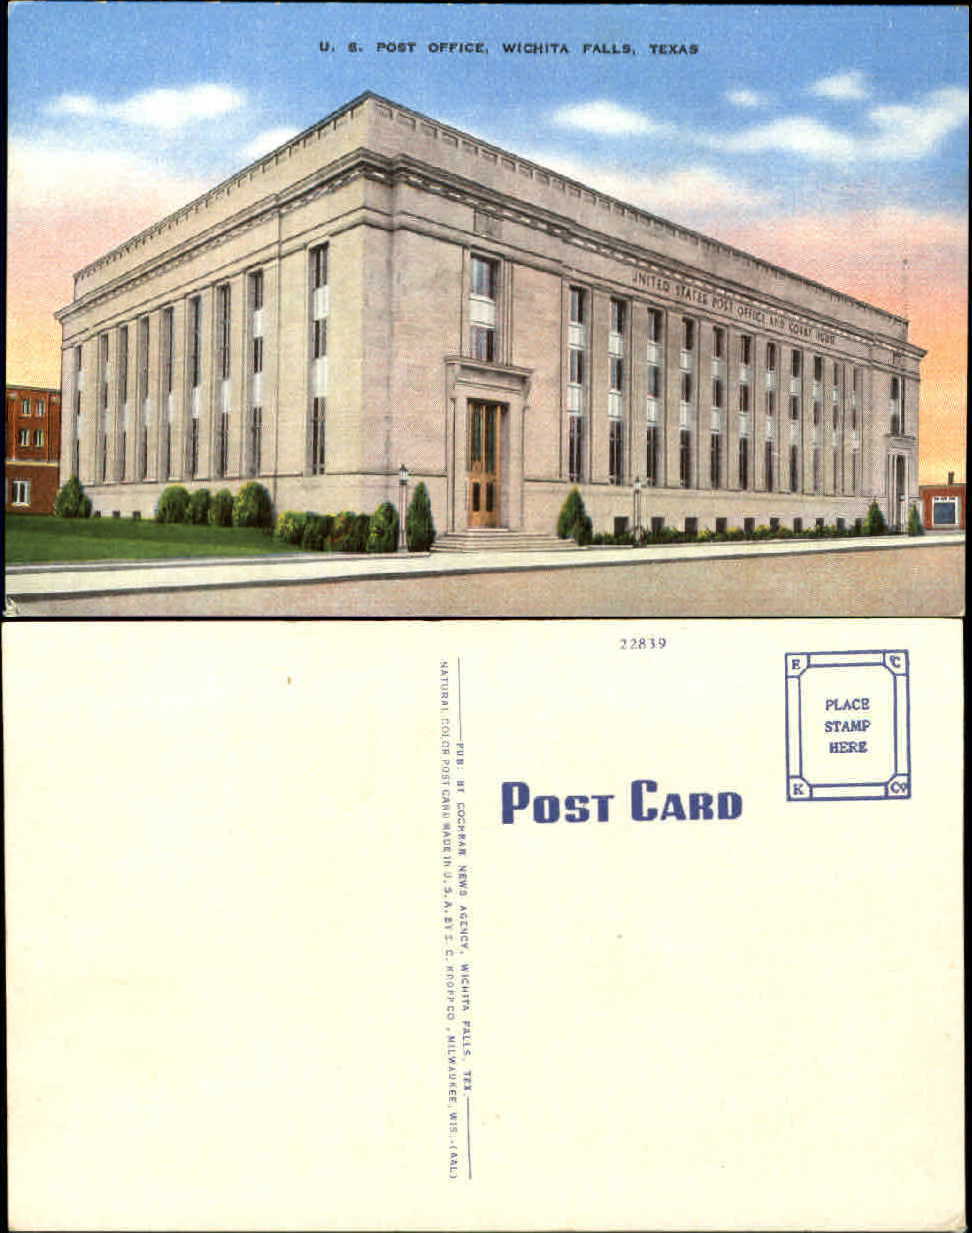 U.S. Post Office Wichita Falls TX unused 1940s linen postcard